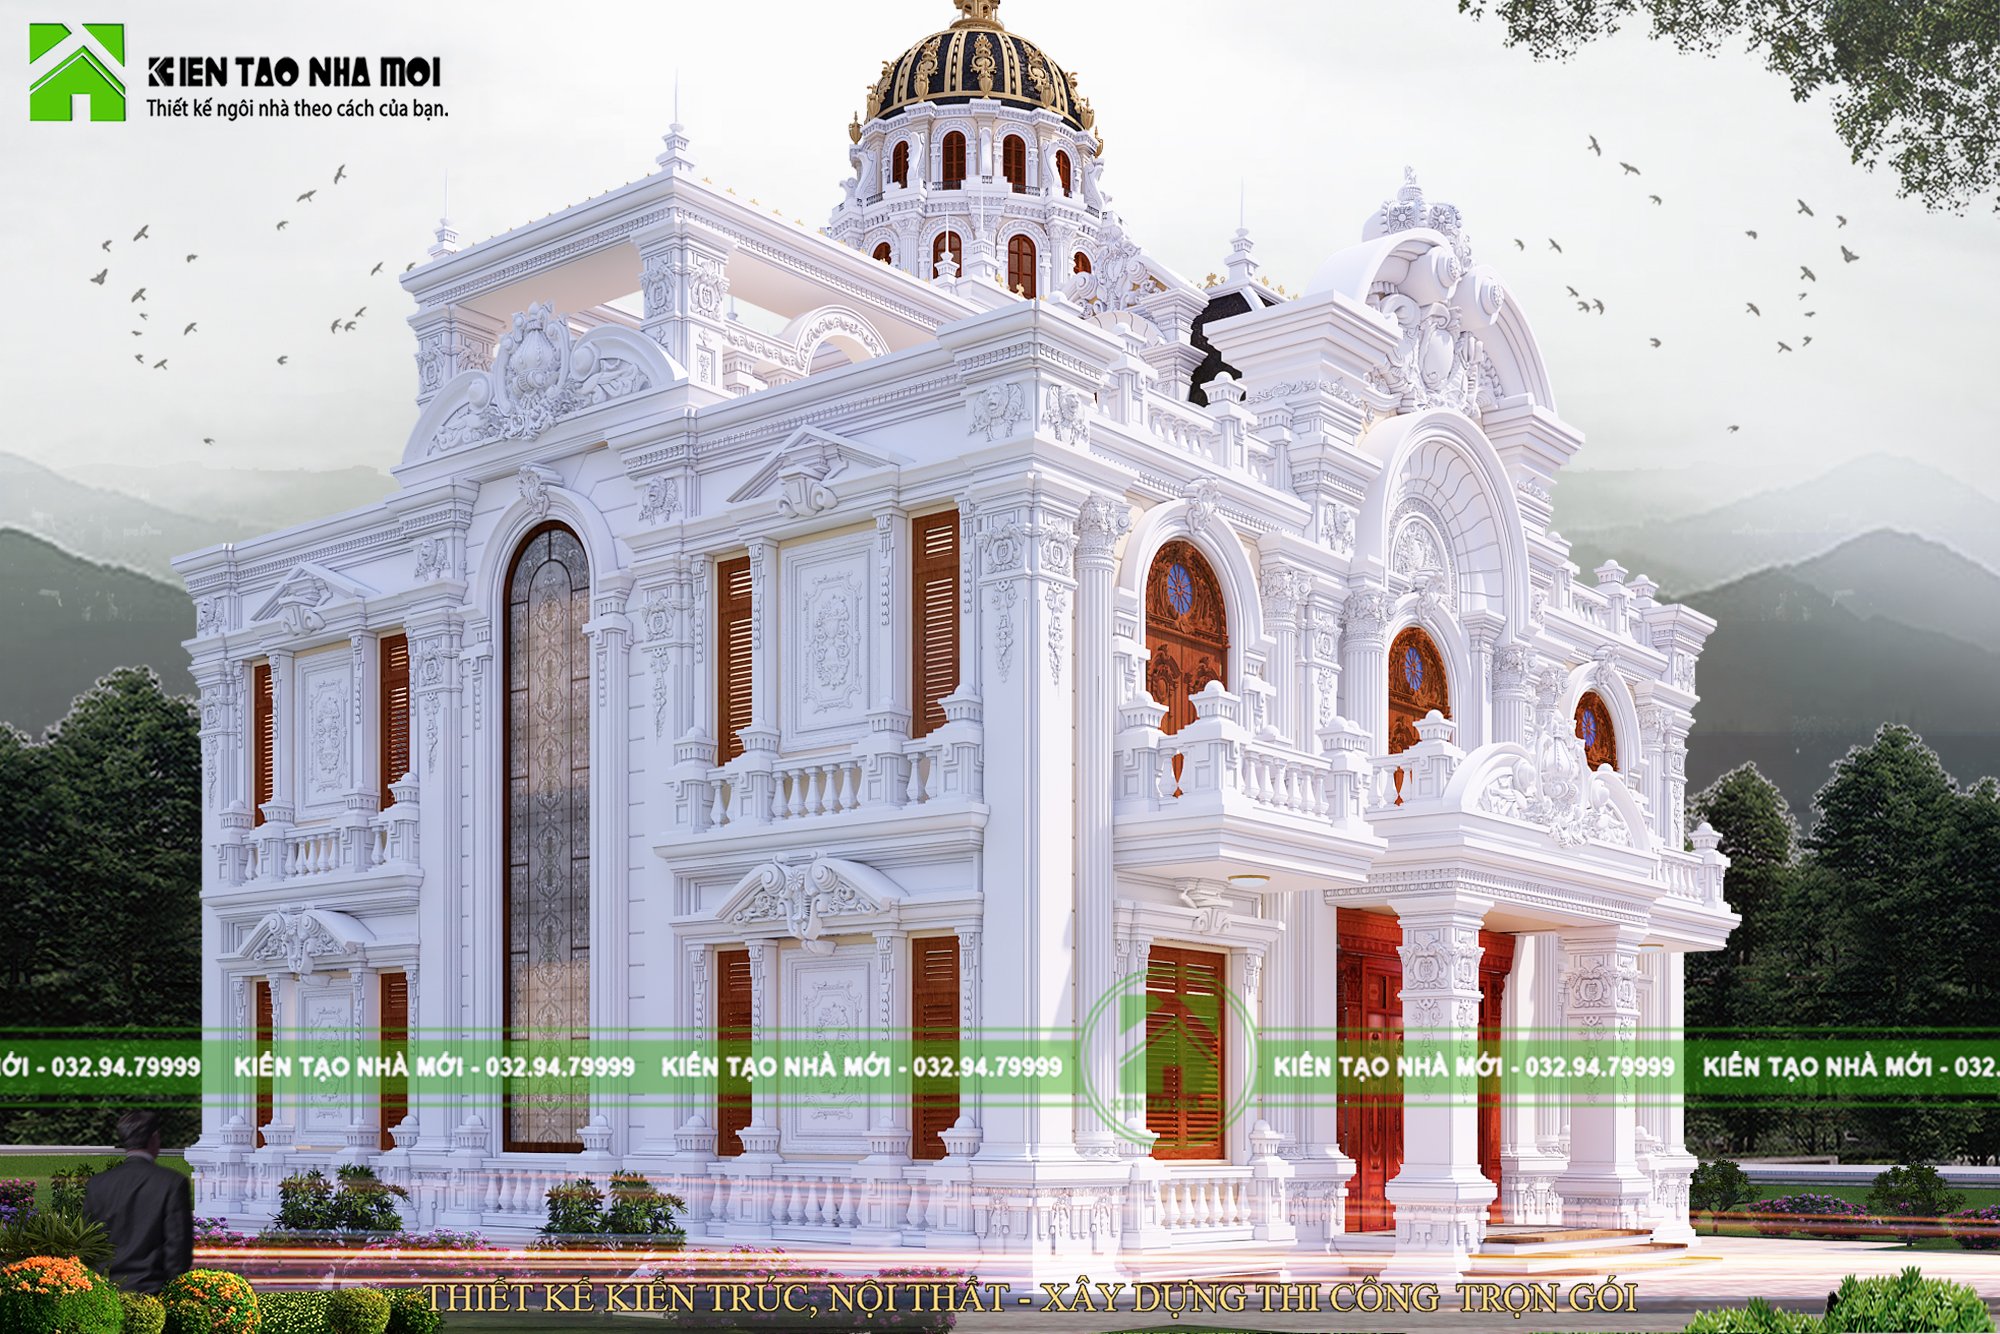 Thiết kế Biệt Thự tại Bắc Ninh Thiết kế lâu đài cổ điển 2 tầng đẳng cấp đẹp 1587266670 5